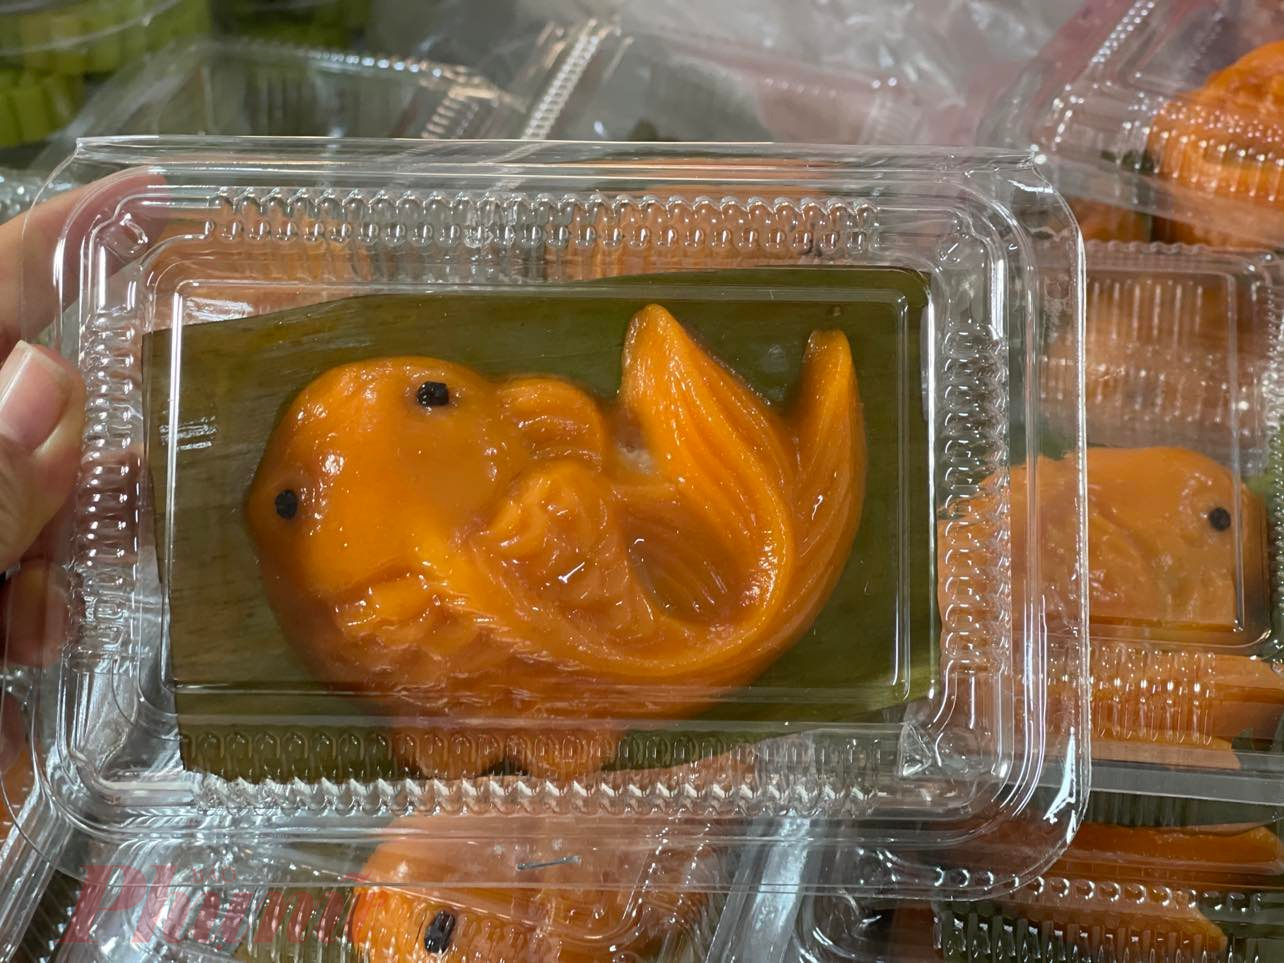 Bánh hình cá chép có nhân dừa được bán chạy, giá 25.000 đồng/hộp - Ảnh: Nguyễn Cẩm